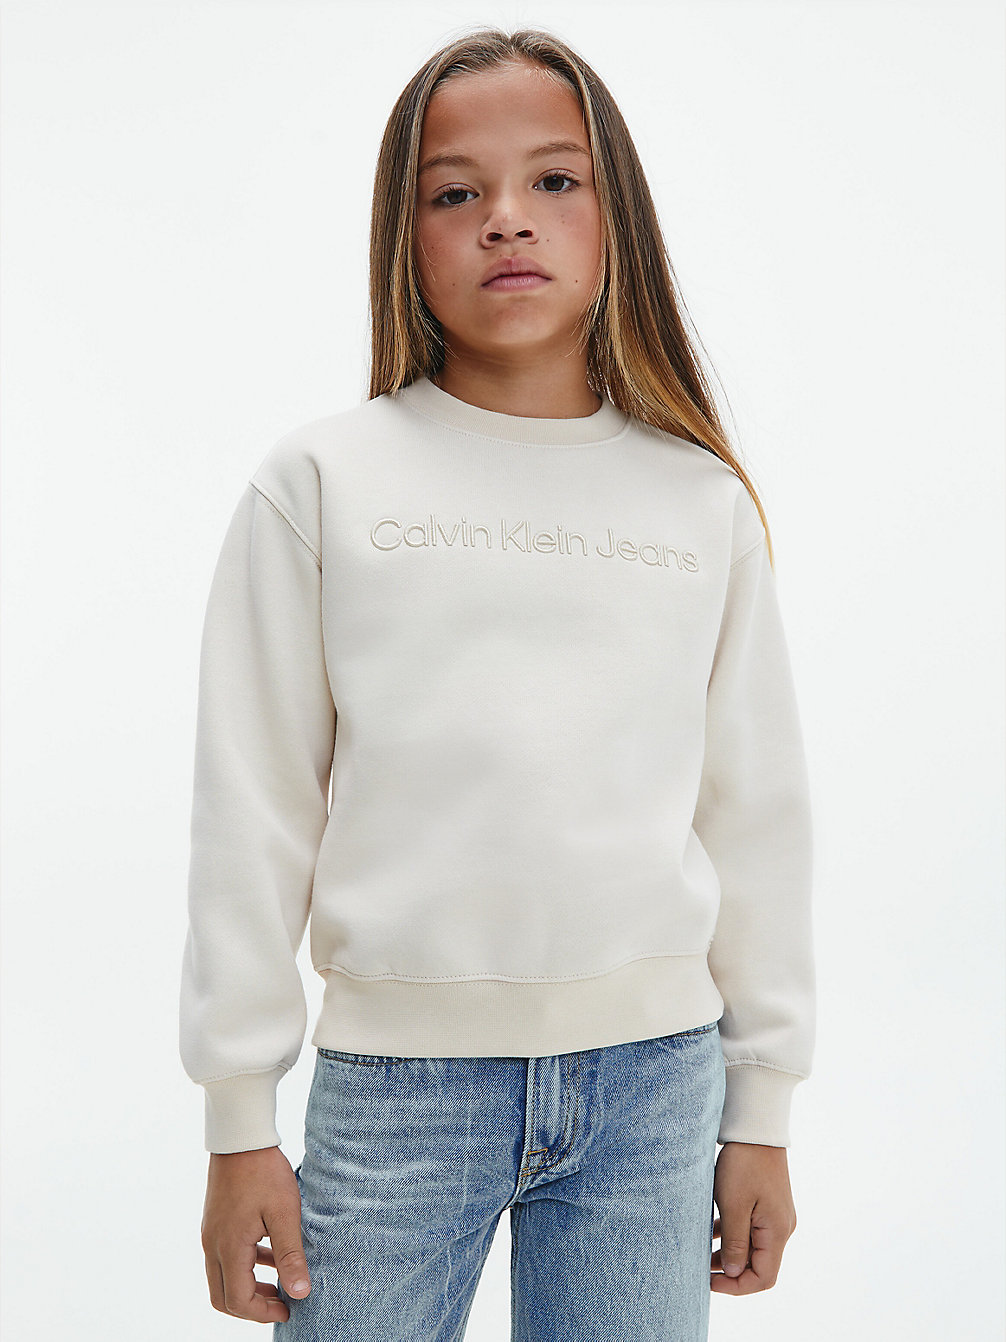 MUSLIN > Logo-Sweatshirt > undefined boys - Calvin Klein